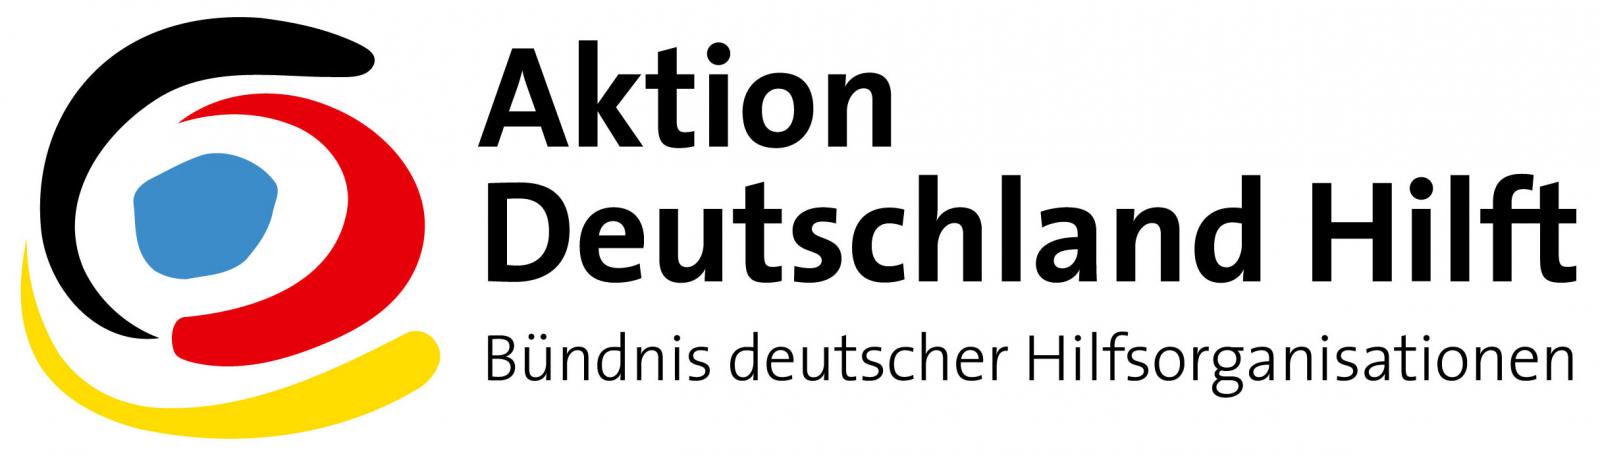 Logo AKtion Deutschland Hilft